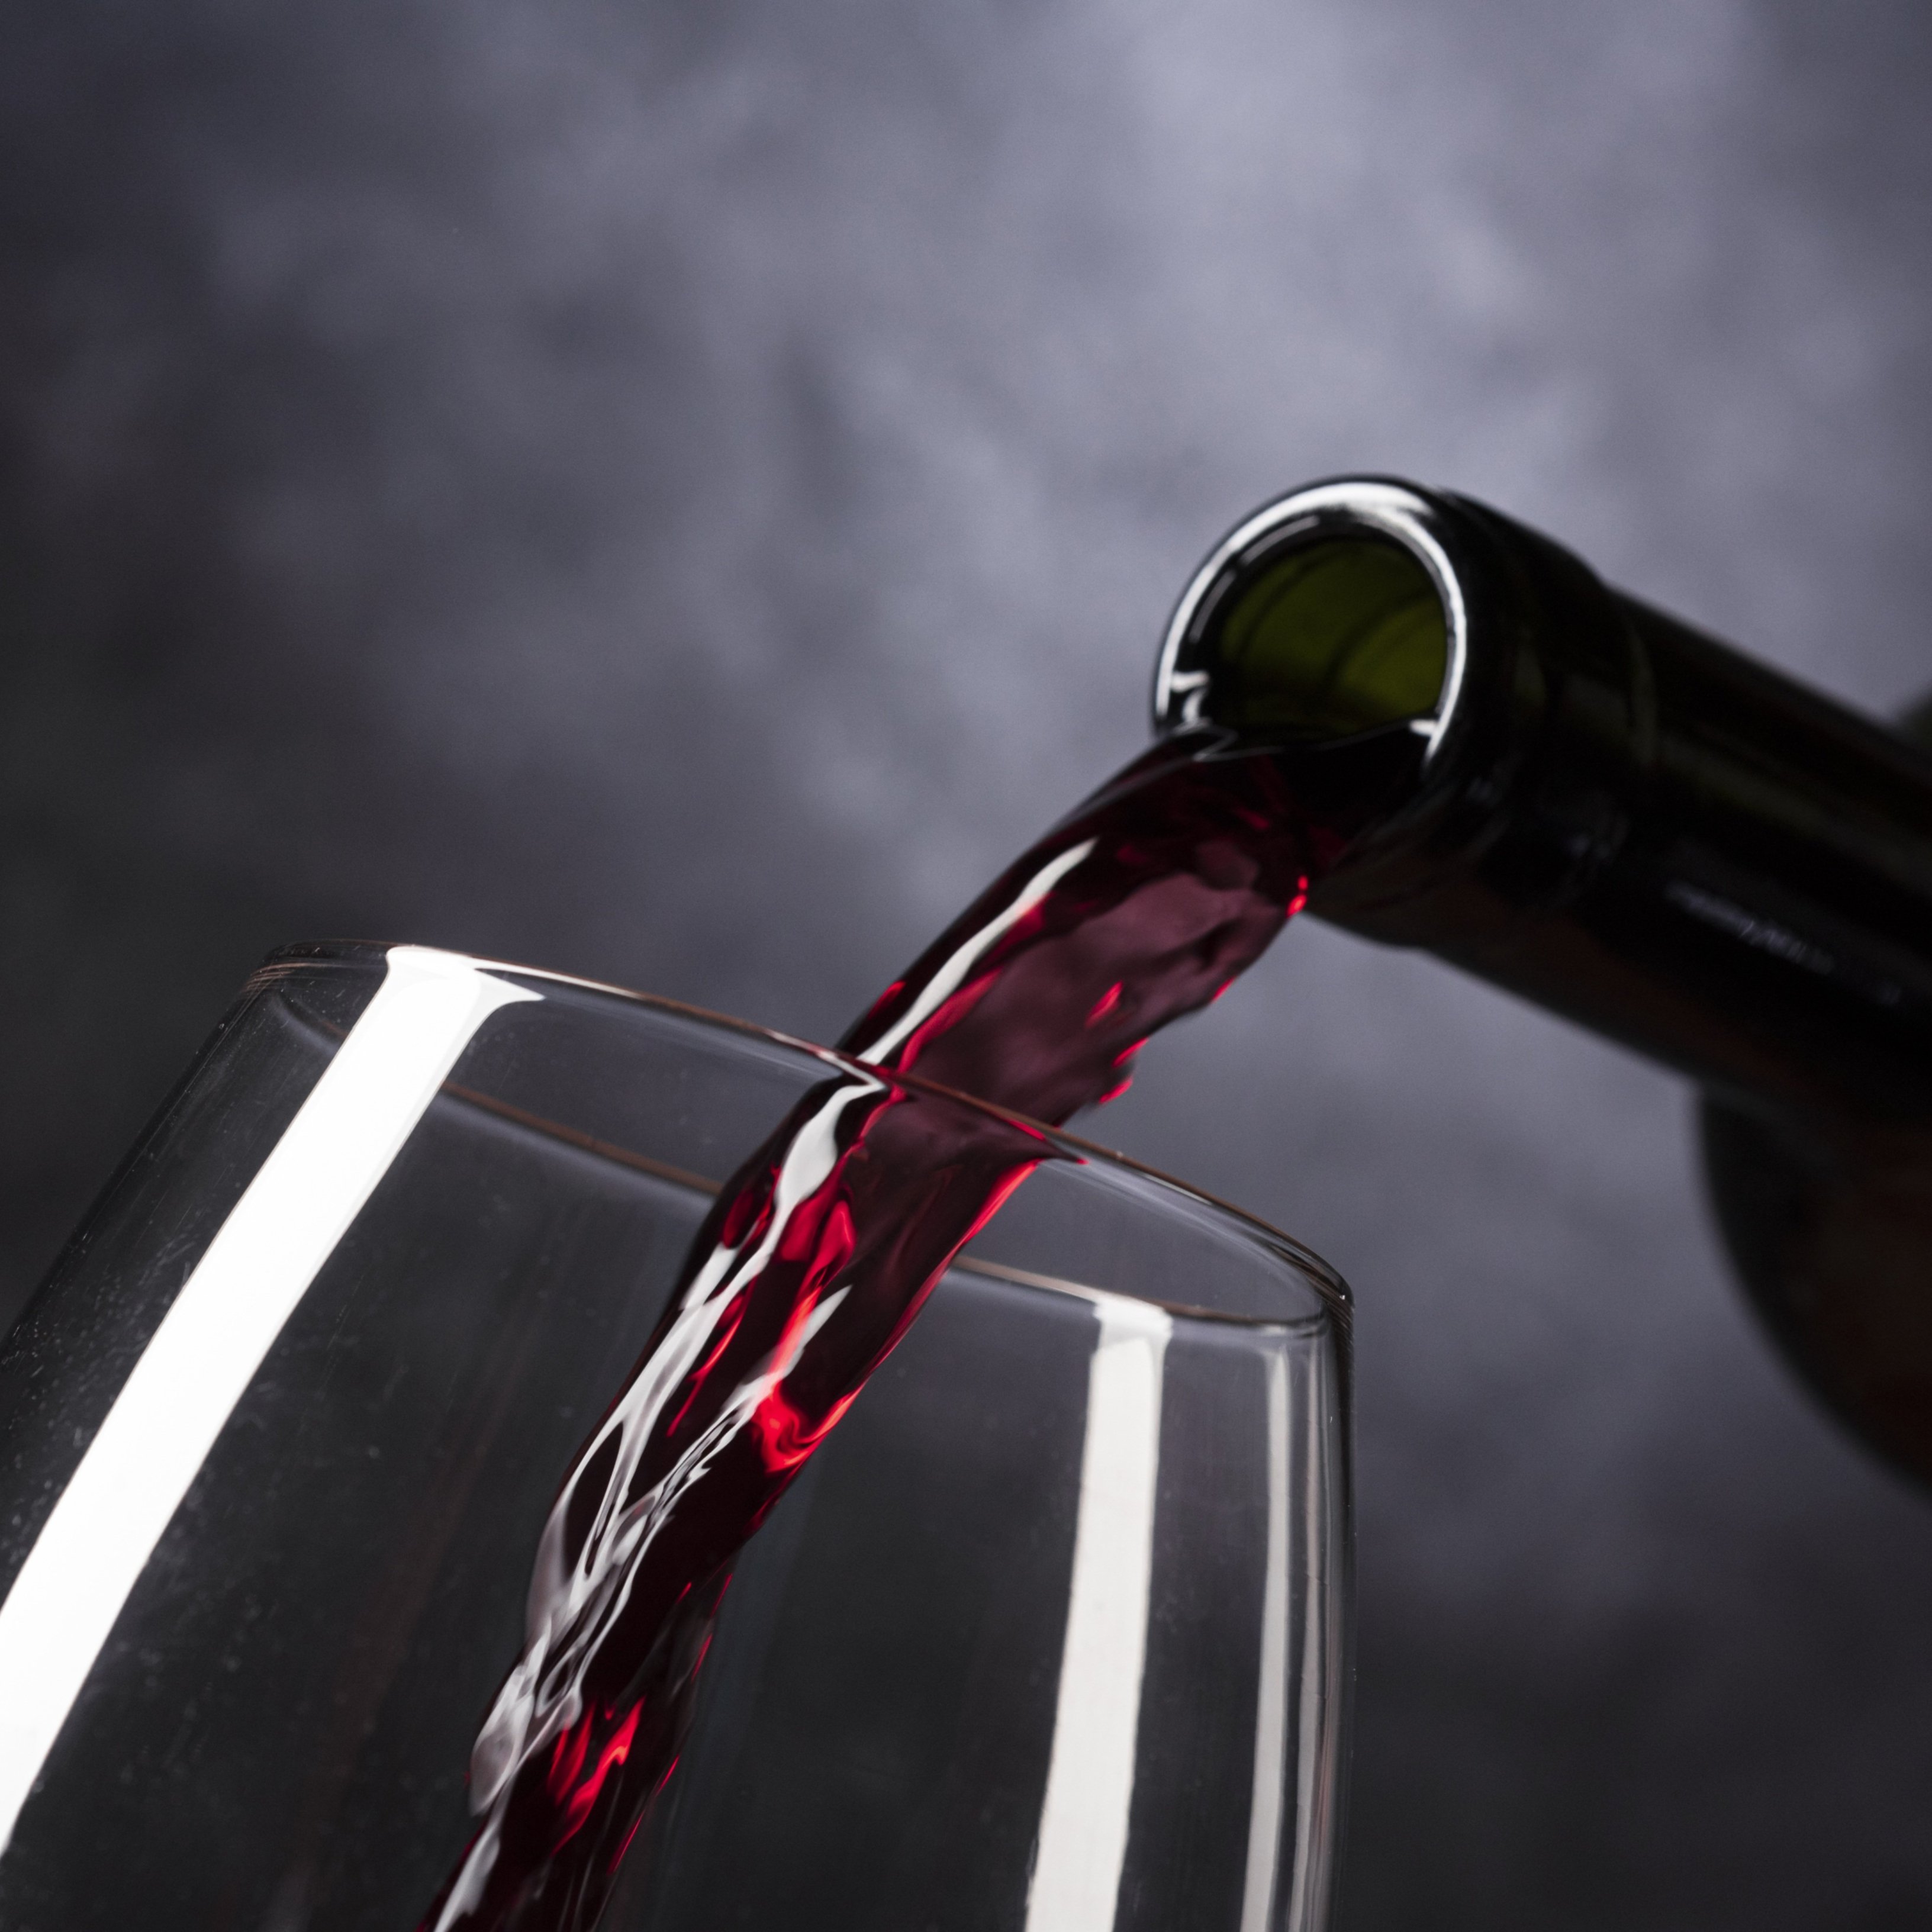 Prendre un got d'alcohol al dia podria augmentar el risc d'arrítmia